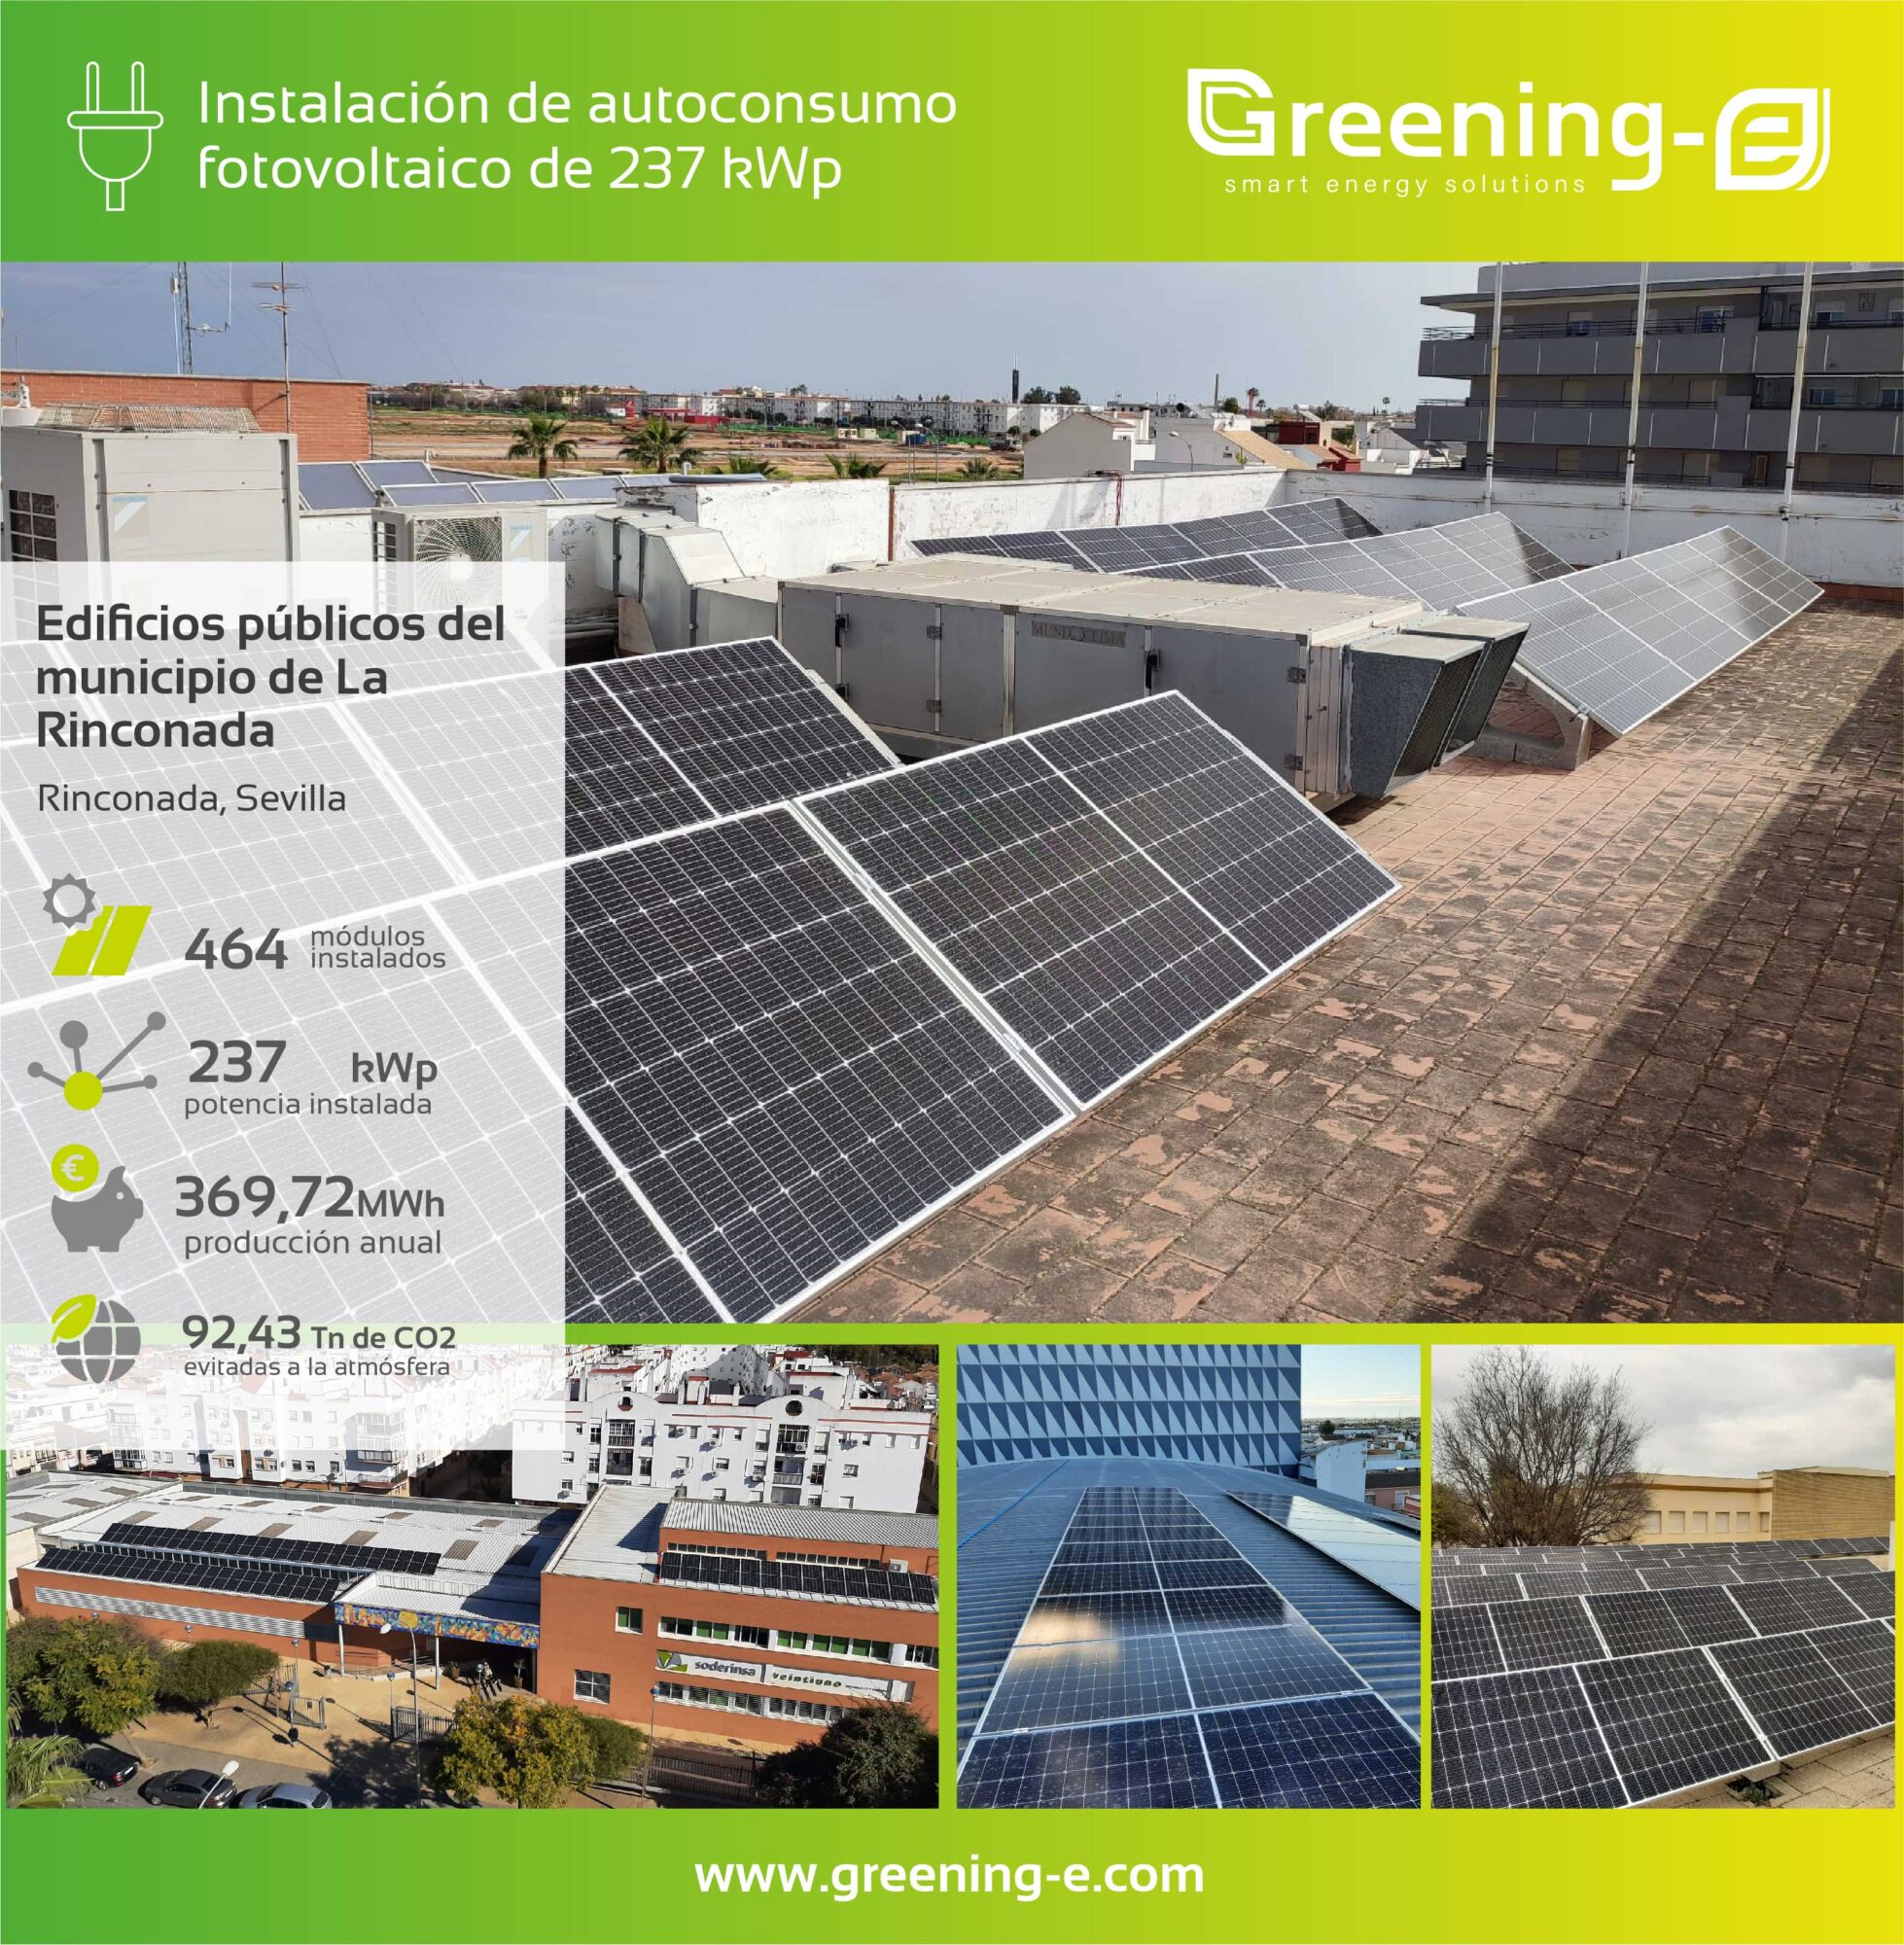 Proyectos Greening-e: Instalaciones fotovoltaicas de autoconsumo en edificios públicos del municipio de La Rinconada